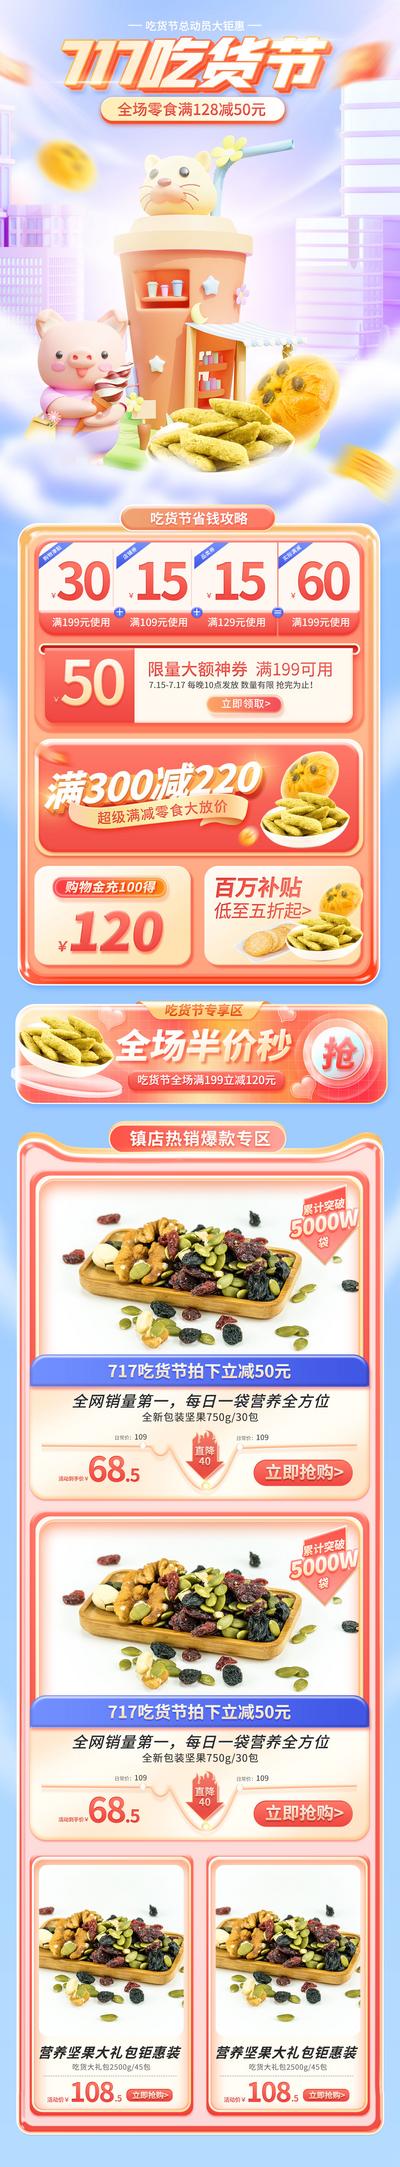 【南门网】电商 首页 717 吃货节 零食 坚果礼包 活动 天猫